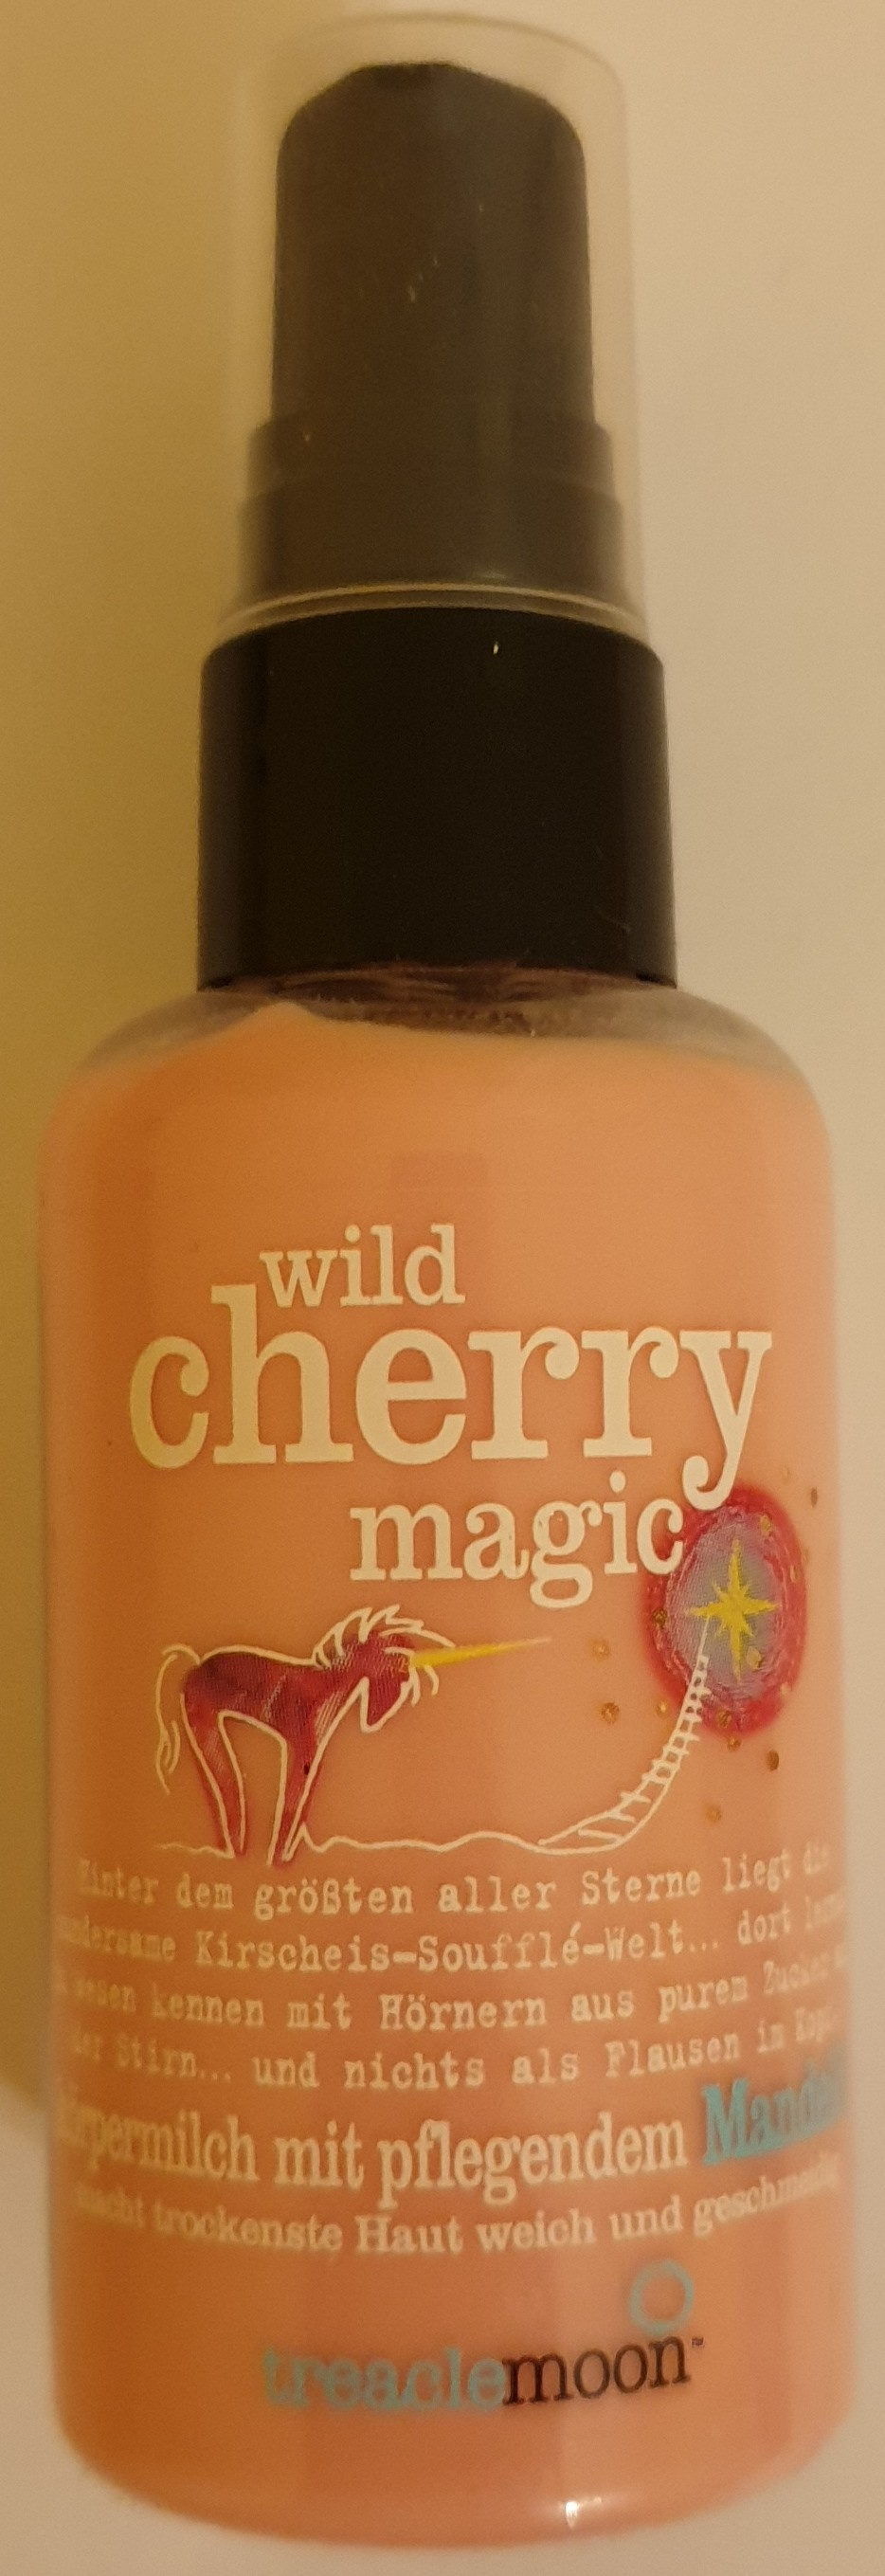 wild cherry magic - Tuote - de